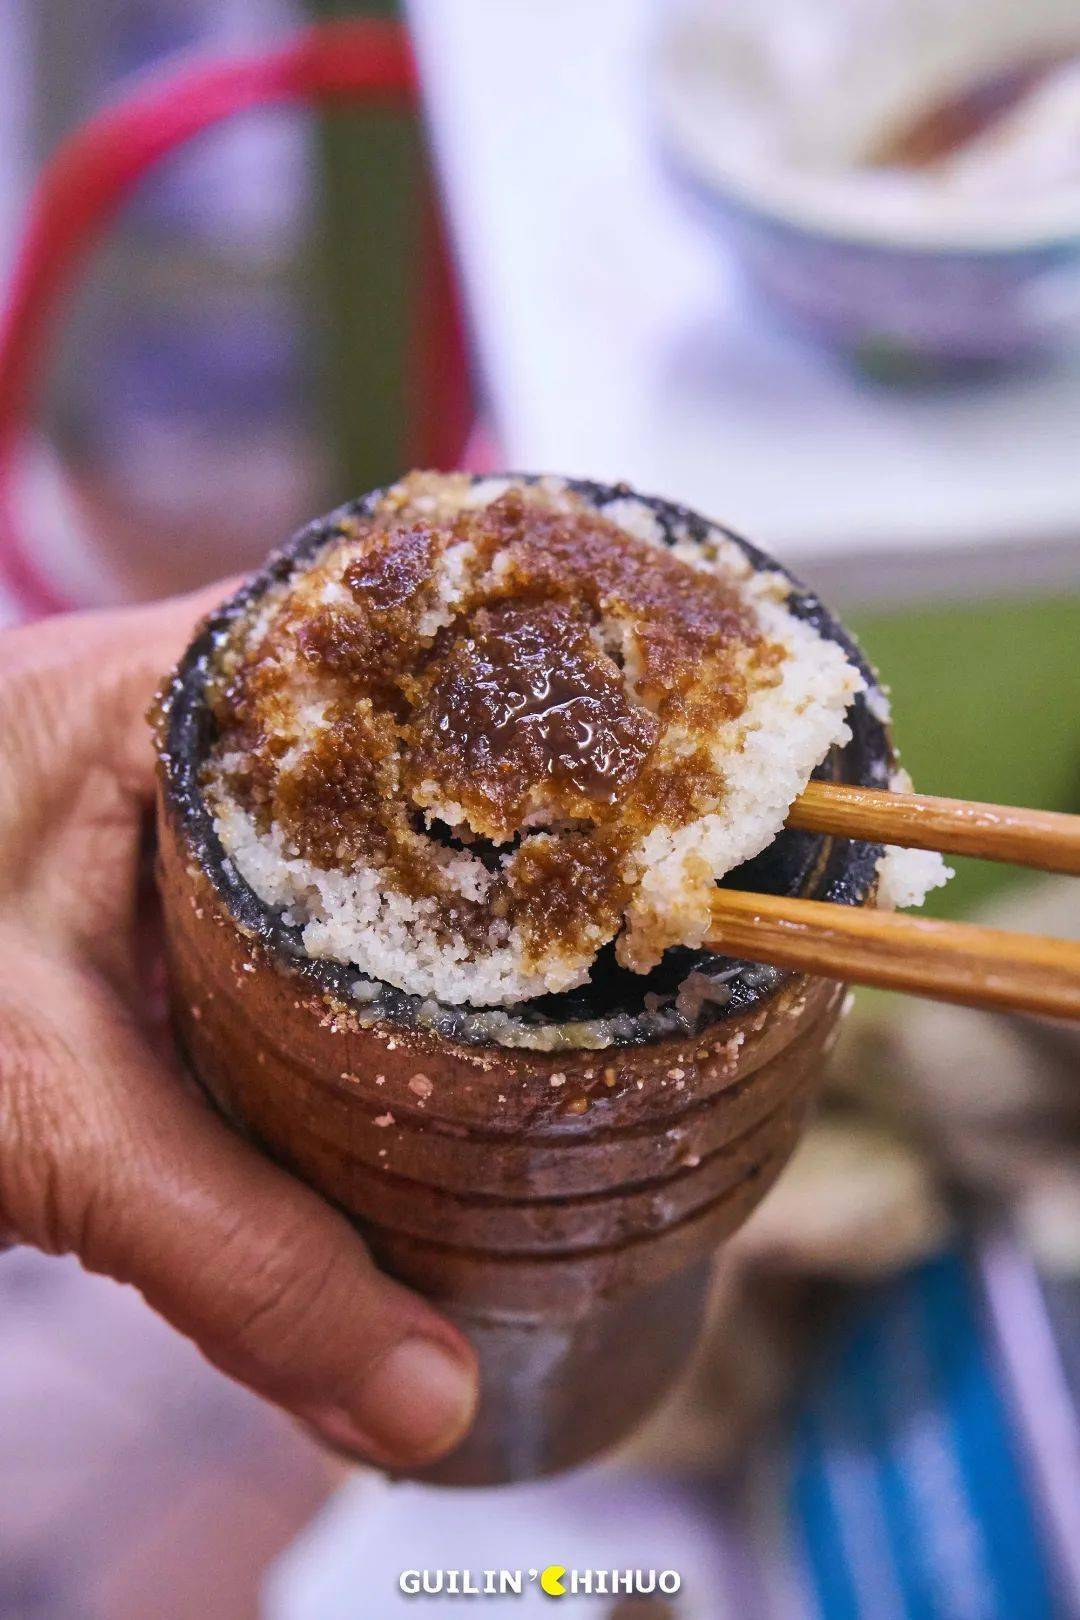 桂林人口中的马蹄糕,一般是指把糯米粉和糖粉倒进模具,用高压锅蒸汽